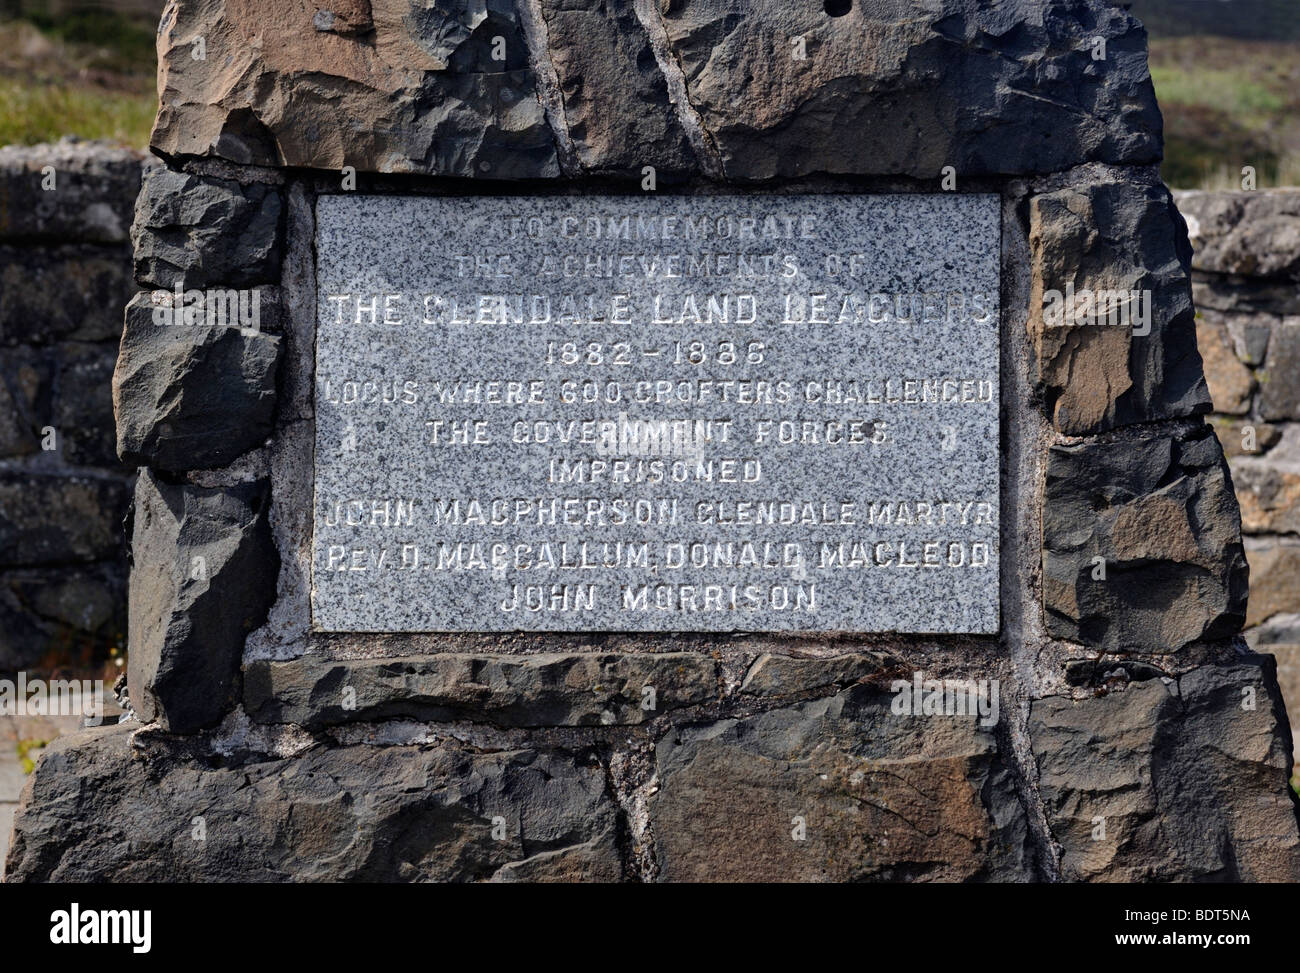 Monument de la Terre Leagures Glendale. Glendale, Duirinish, île de Skye, Hébrides intérieures, Ecosse, Royaume-Uni, Europe. Banque D'Images